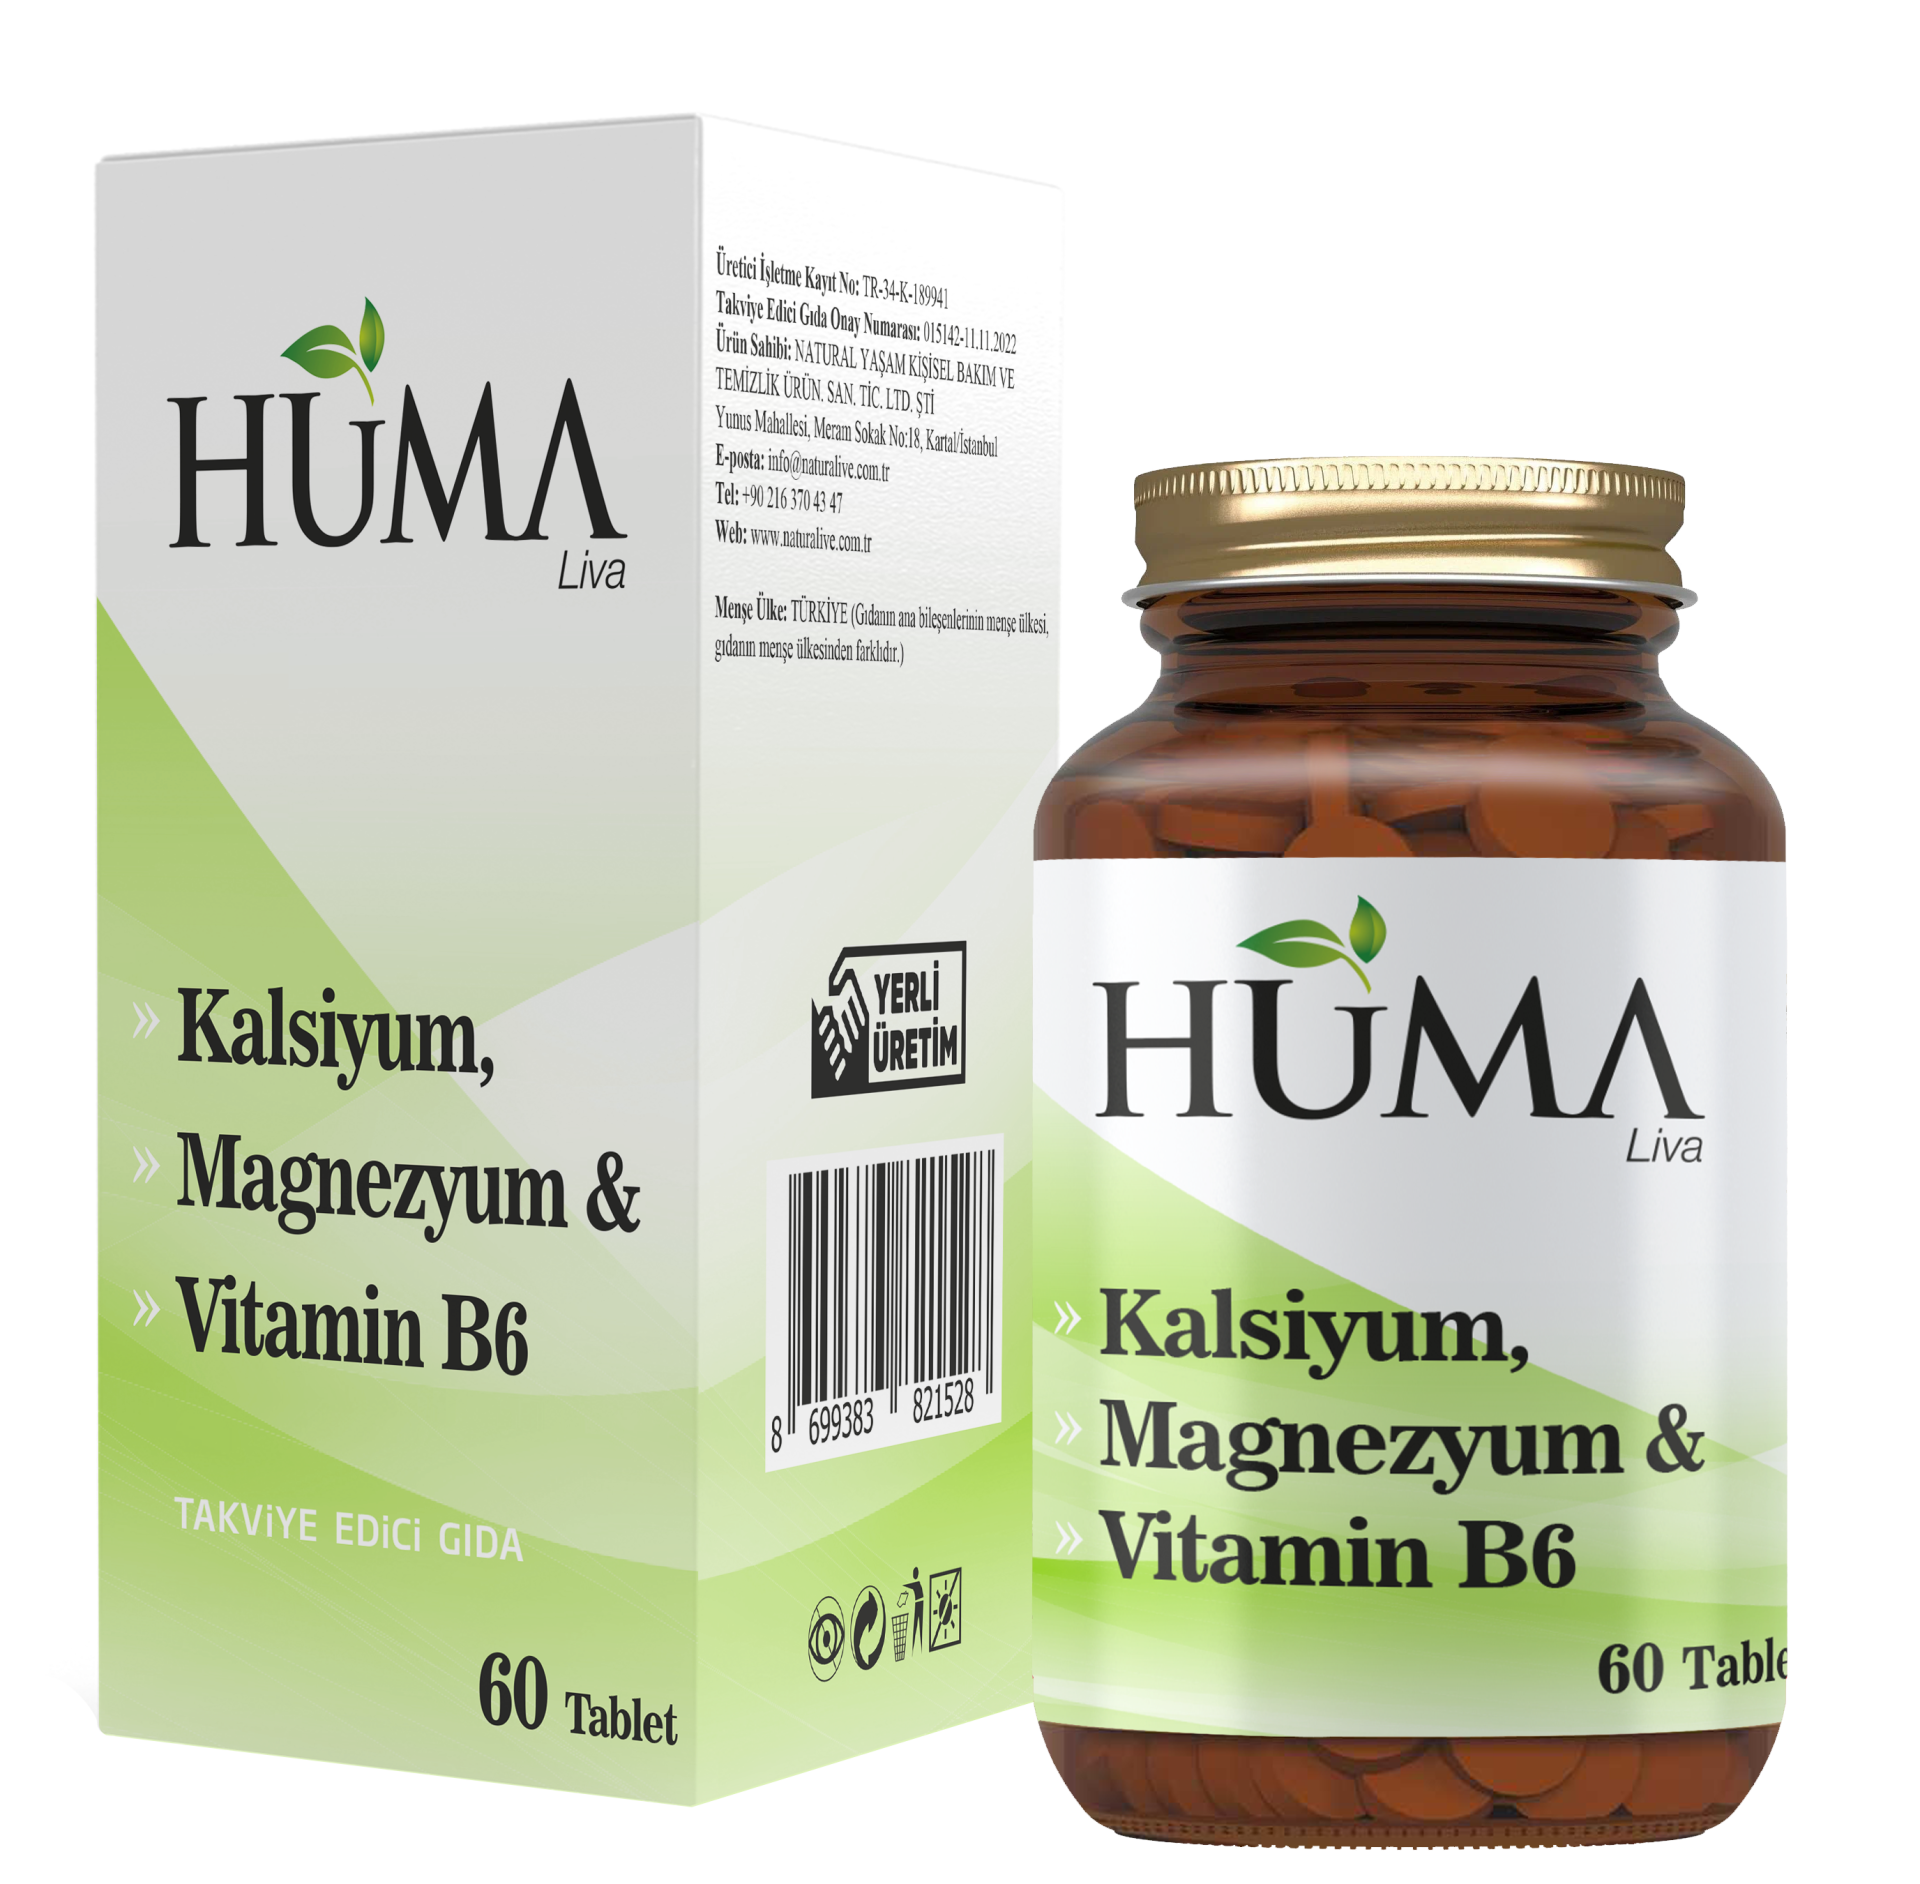 Kalsiyum, Magnezyum & Vitamin B6